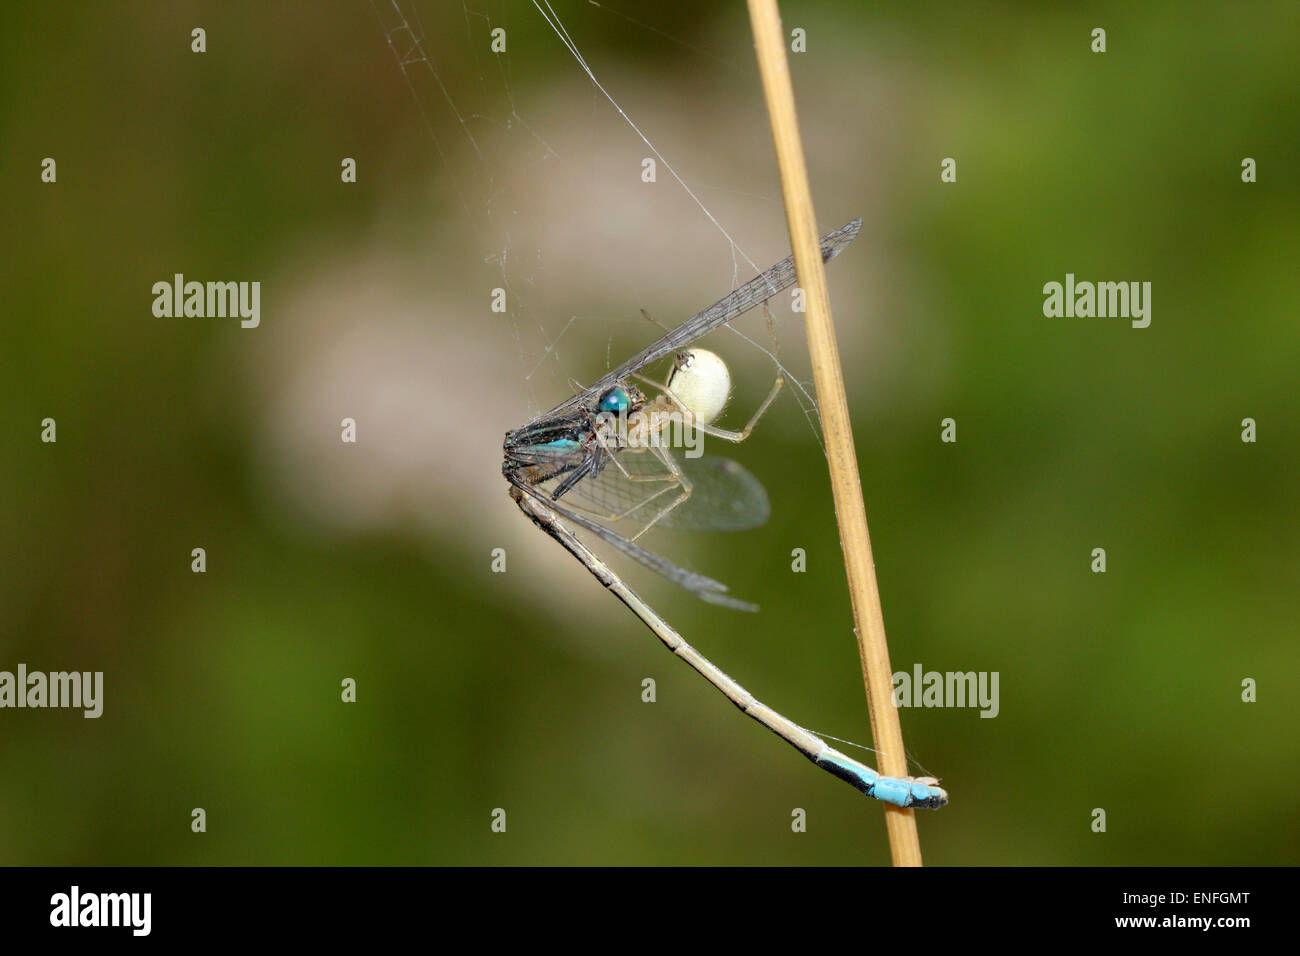 Pettine-footed Spider - Enoplognatha ovata - con Damselfly preda. Foto Stock